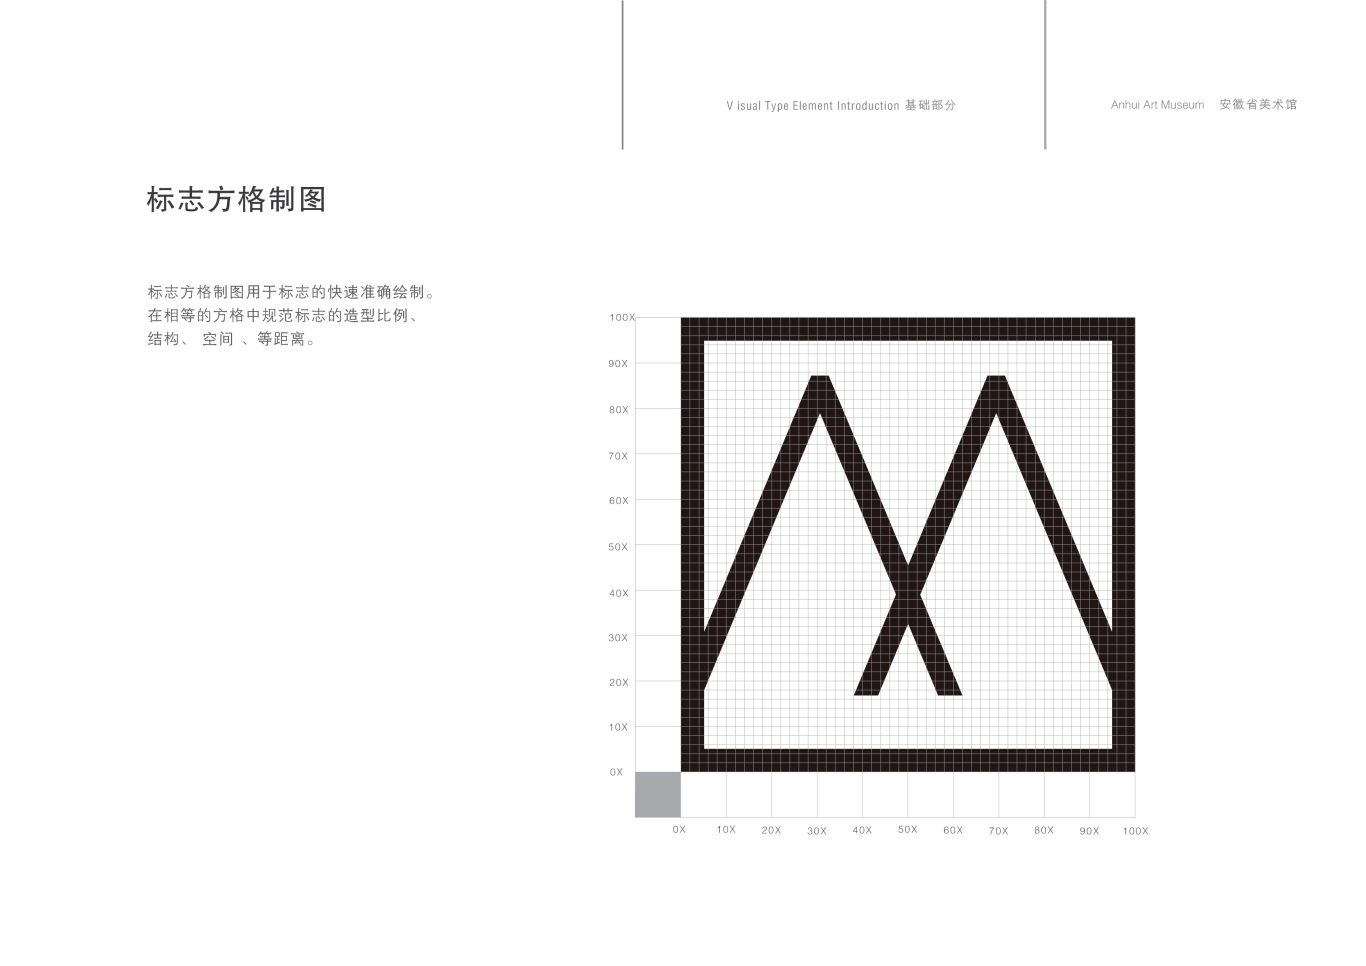 安徽省美术馆标志设计图4